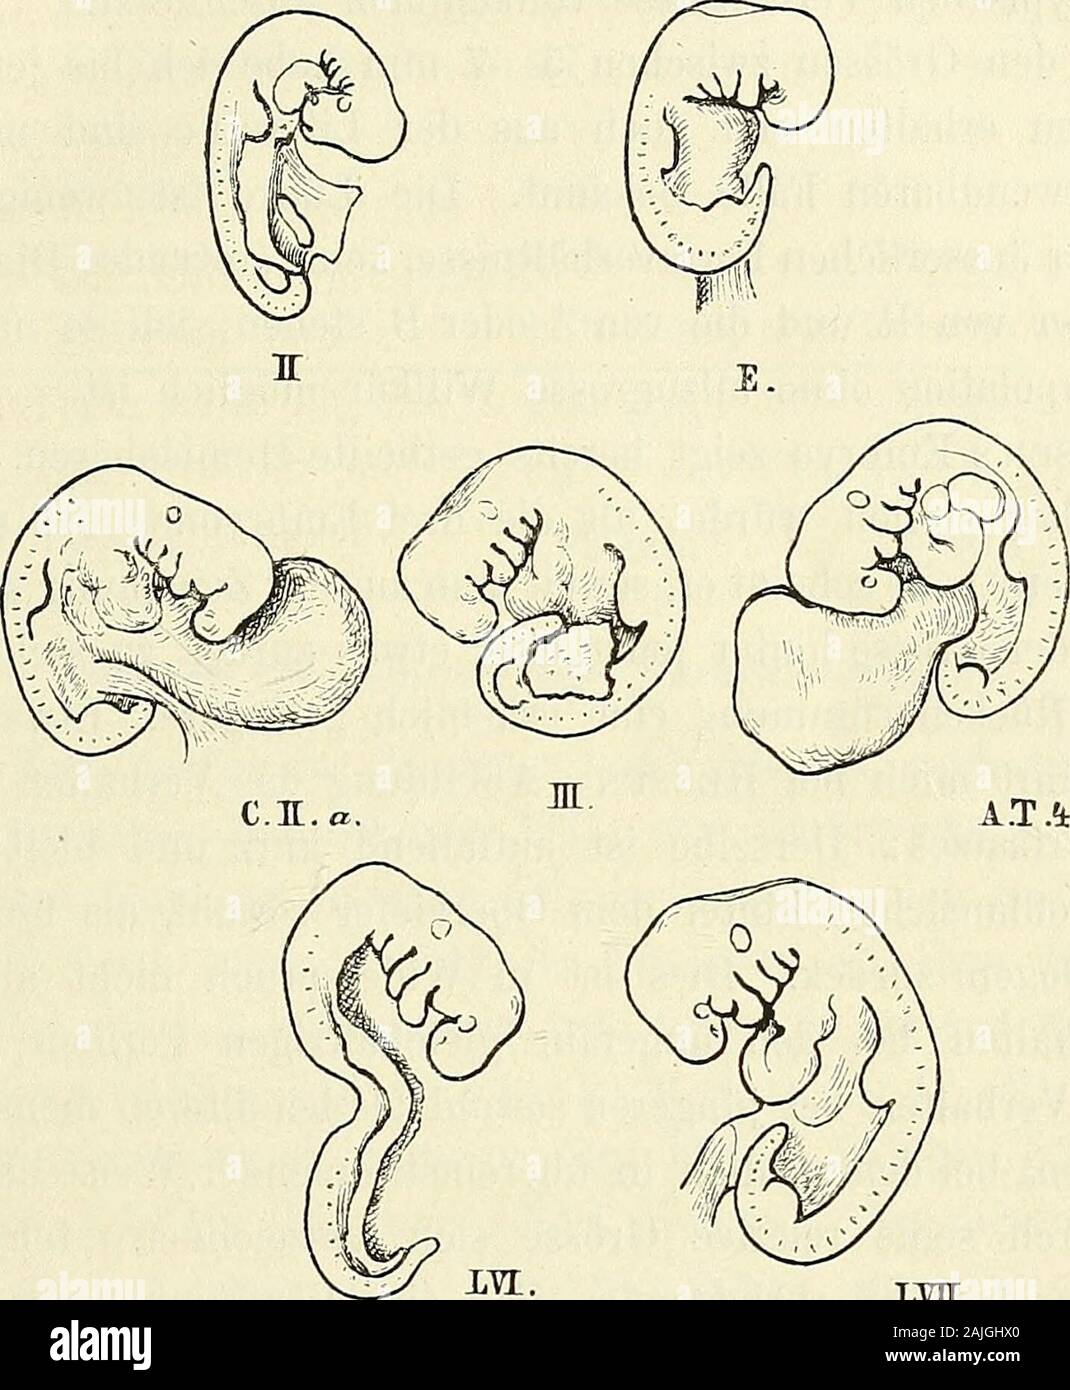 Anatomie menschlicher Embryonen . hleife ist bereits caudalwärts gerichtet. Die Nabelblase istzwar un ihrer Wurzel eingeschnürt, indess noch in breiter Verbin-bindung mit dem Körper. Eine Leberanschwellung vorhanden ist,aber schwach hervortretend. Etwas älter als die drei eben besprochenen sind die Embryonen 1) Von Hensen und Ecker liegen directe Maassangaben (4 bez. 4,5 mm),vom embrione 4 von allen Thomson eine 4 mm lange figura in natürlicherGrösse vor. Der CosTssche embrione, angeblich 15mal vergrössert, ist 6 cmlang, vfas auch 4 mm Länge natürliche ergeben würde. Man kann sich aufdie CosTEschen Foto Stock